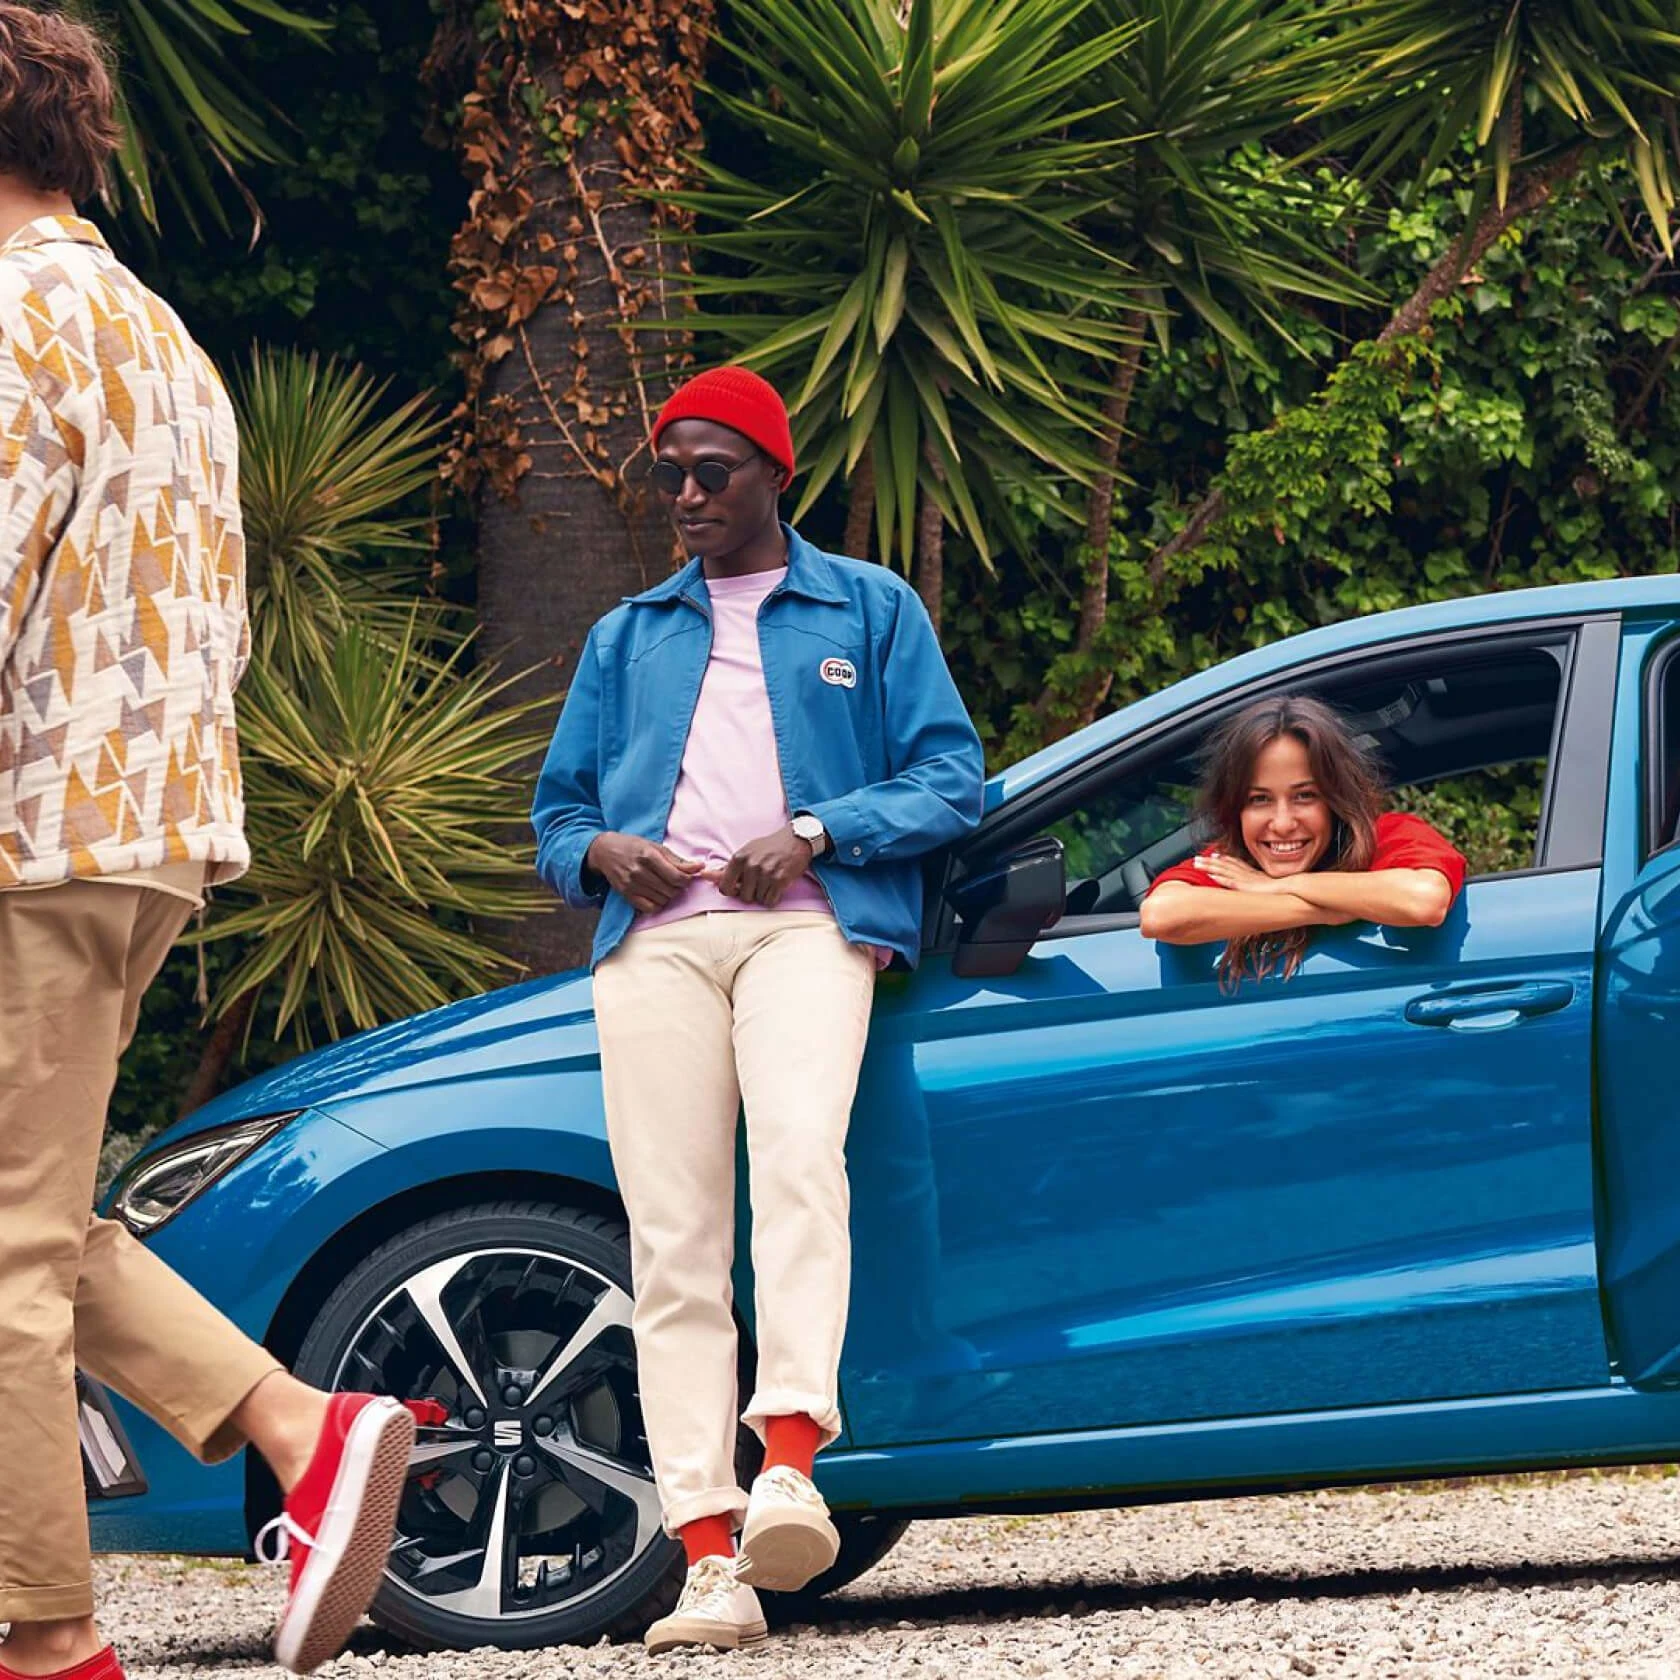 Stilvoller Mann lehnt an blauer Limousine, die draußen neben grünen Palmen geparkt ist, und junge Frau lächelt aus dem Fahrerfenster